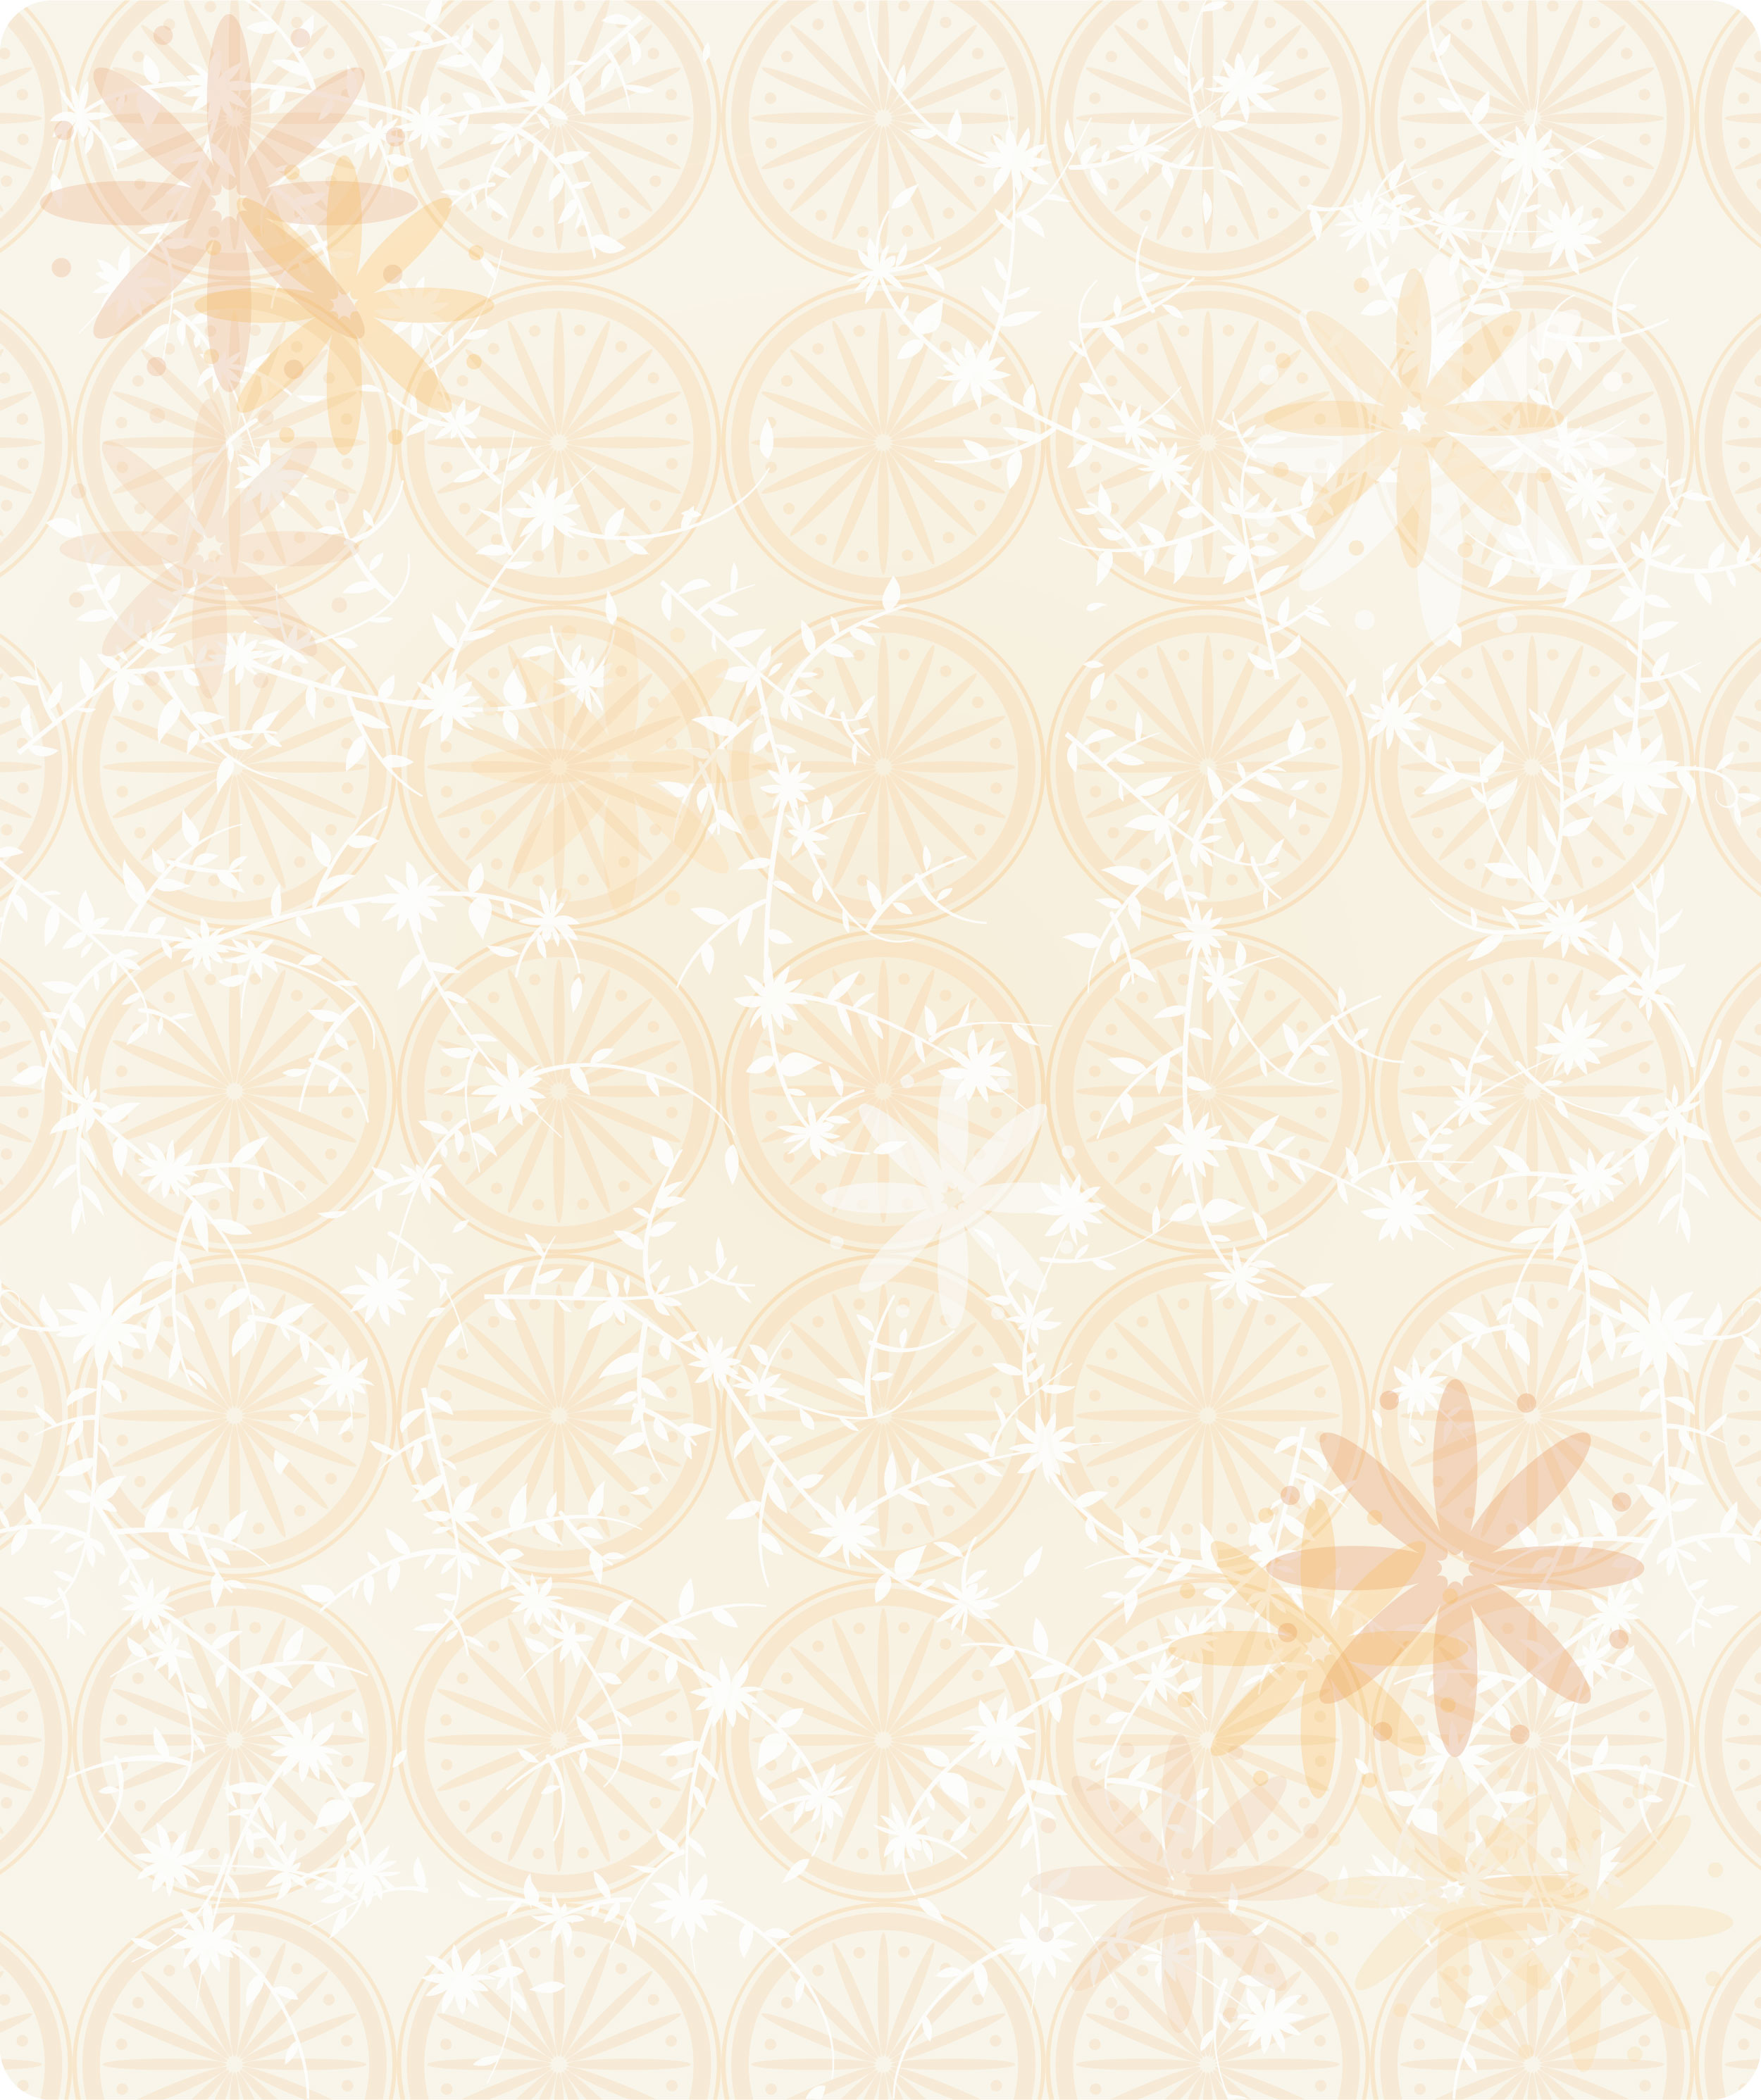 オレンジ色の花のイラスト フリー素材 壁紙 背景no 228 花模様 丸円